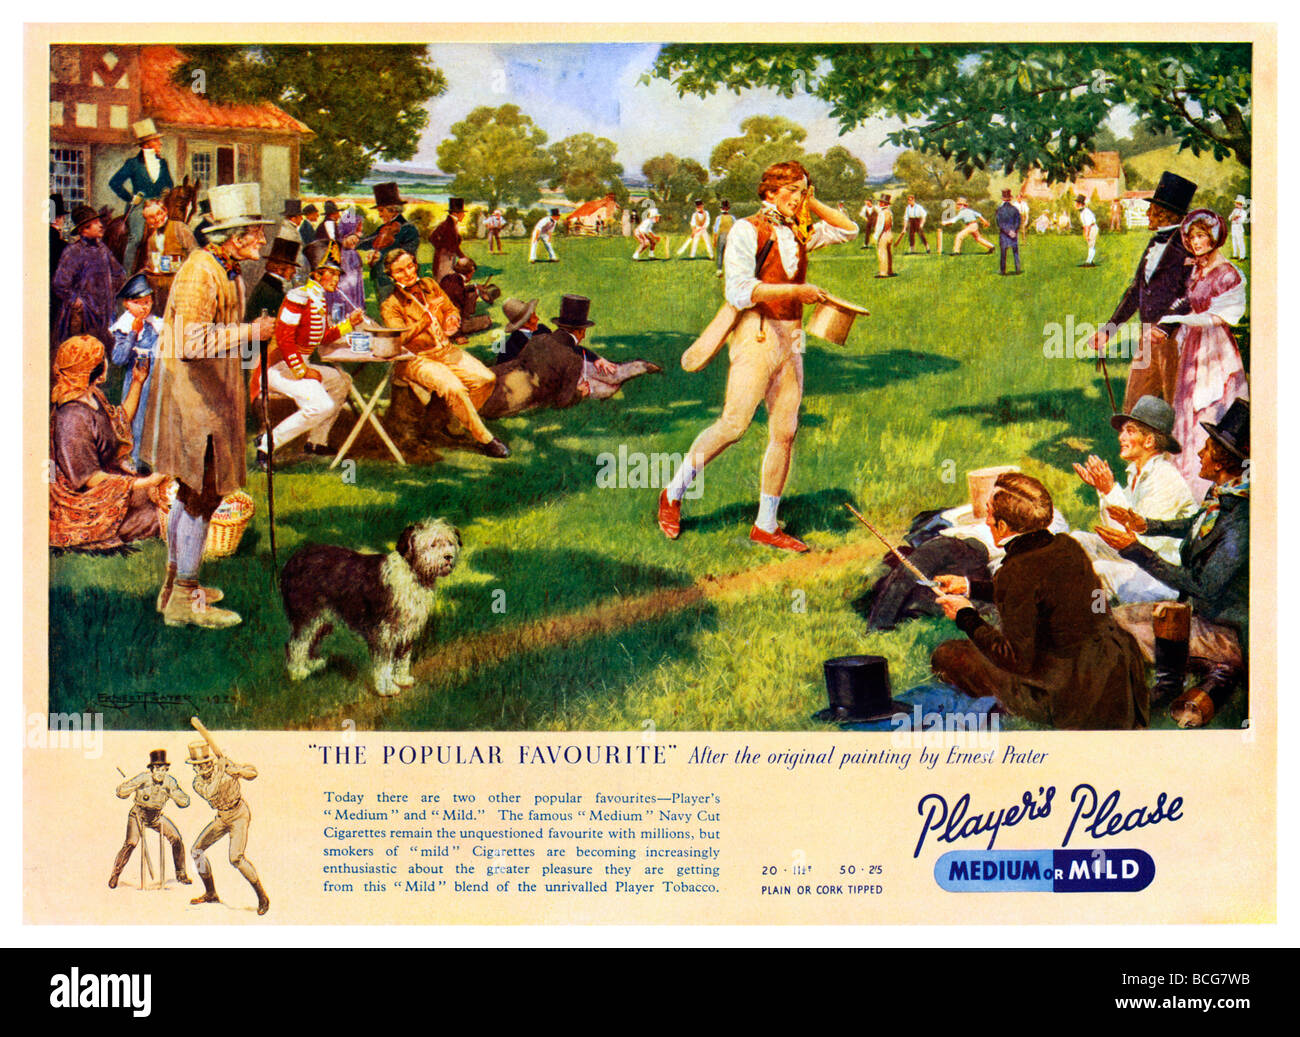 Un favori populaire ad 1930 pour les joueurs des cigarettes à l'aide du Prater Ernest peinture d'un jeu de cricket Regency Banque D'Images